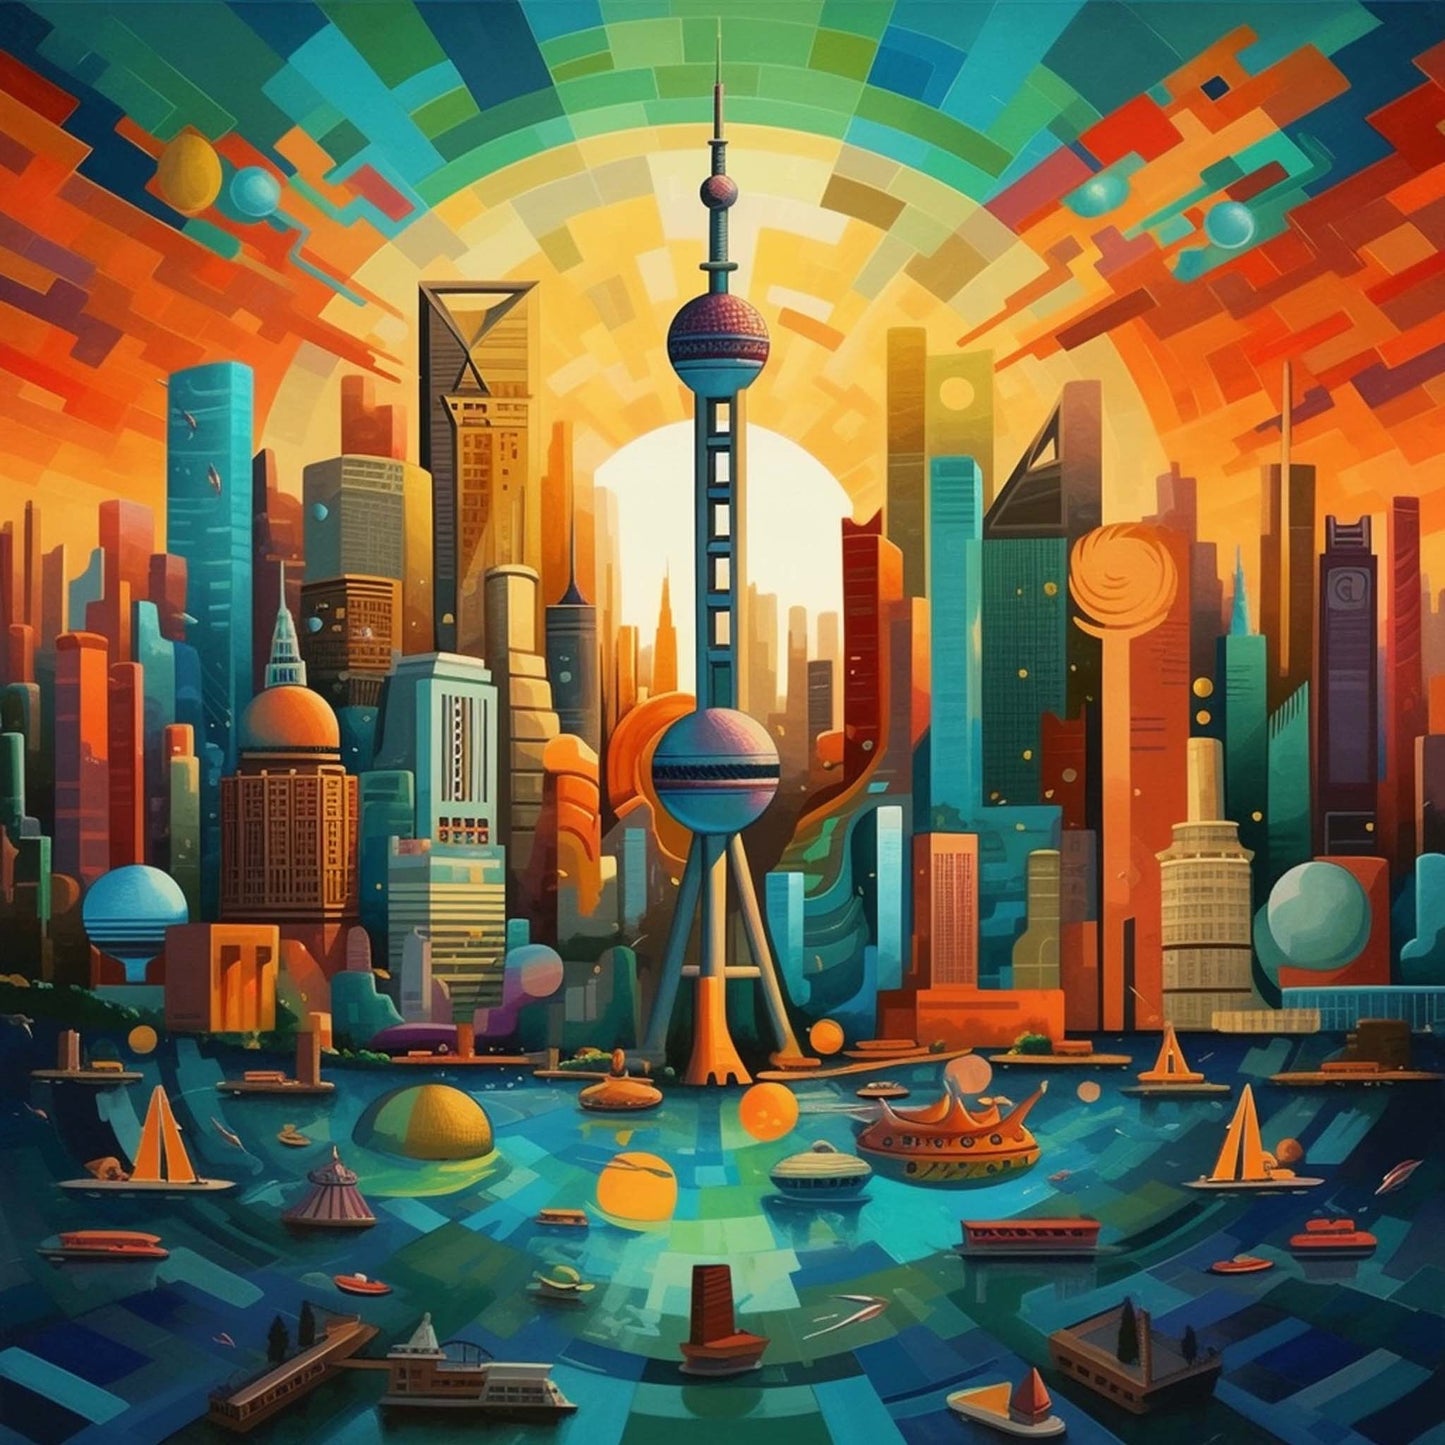 Urbanisto - Shanghai Skyline - Wandbild in der Stilrichtung des Futurismus